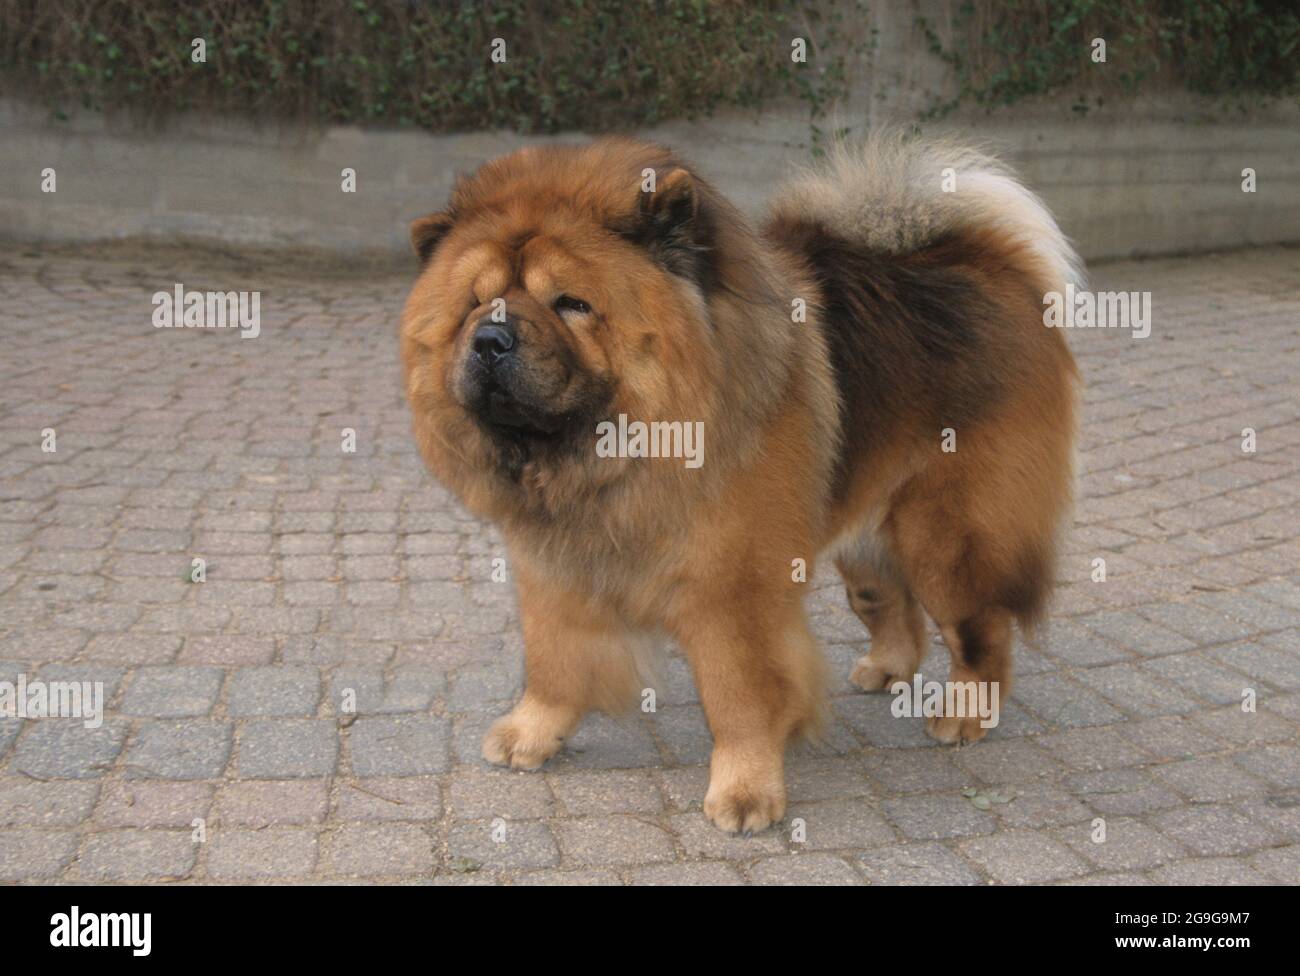 La Chow Chow est une race de chien originaire du nord de la Chine. Le Chow Chow est un chien robuste, carré dans le profil, avec un crâne large et petit, t Banque D'Images